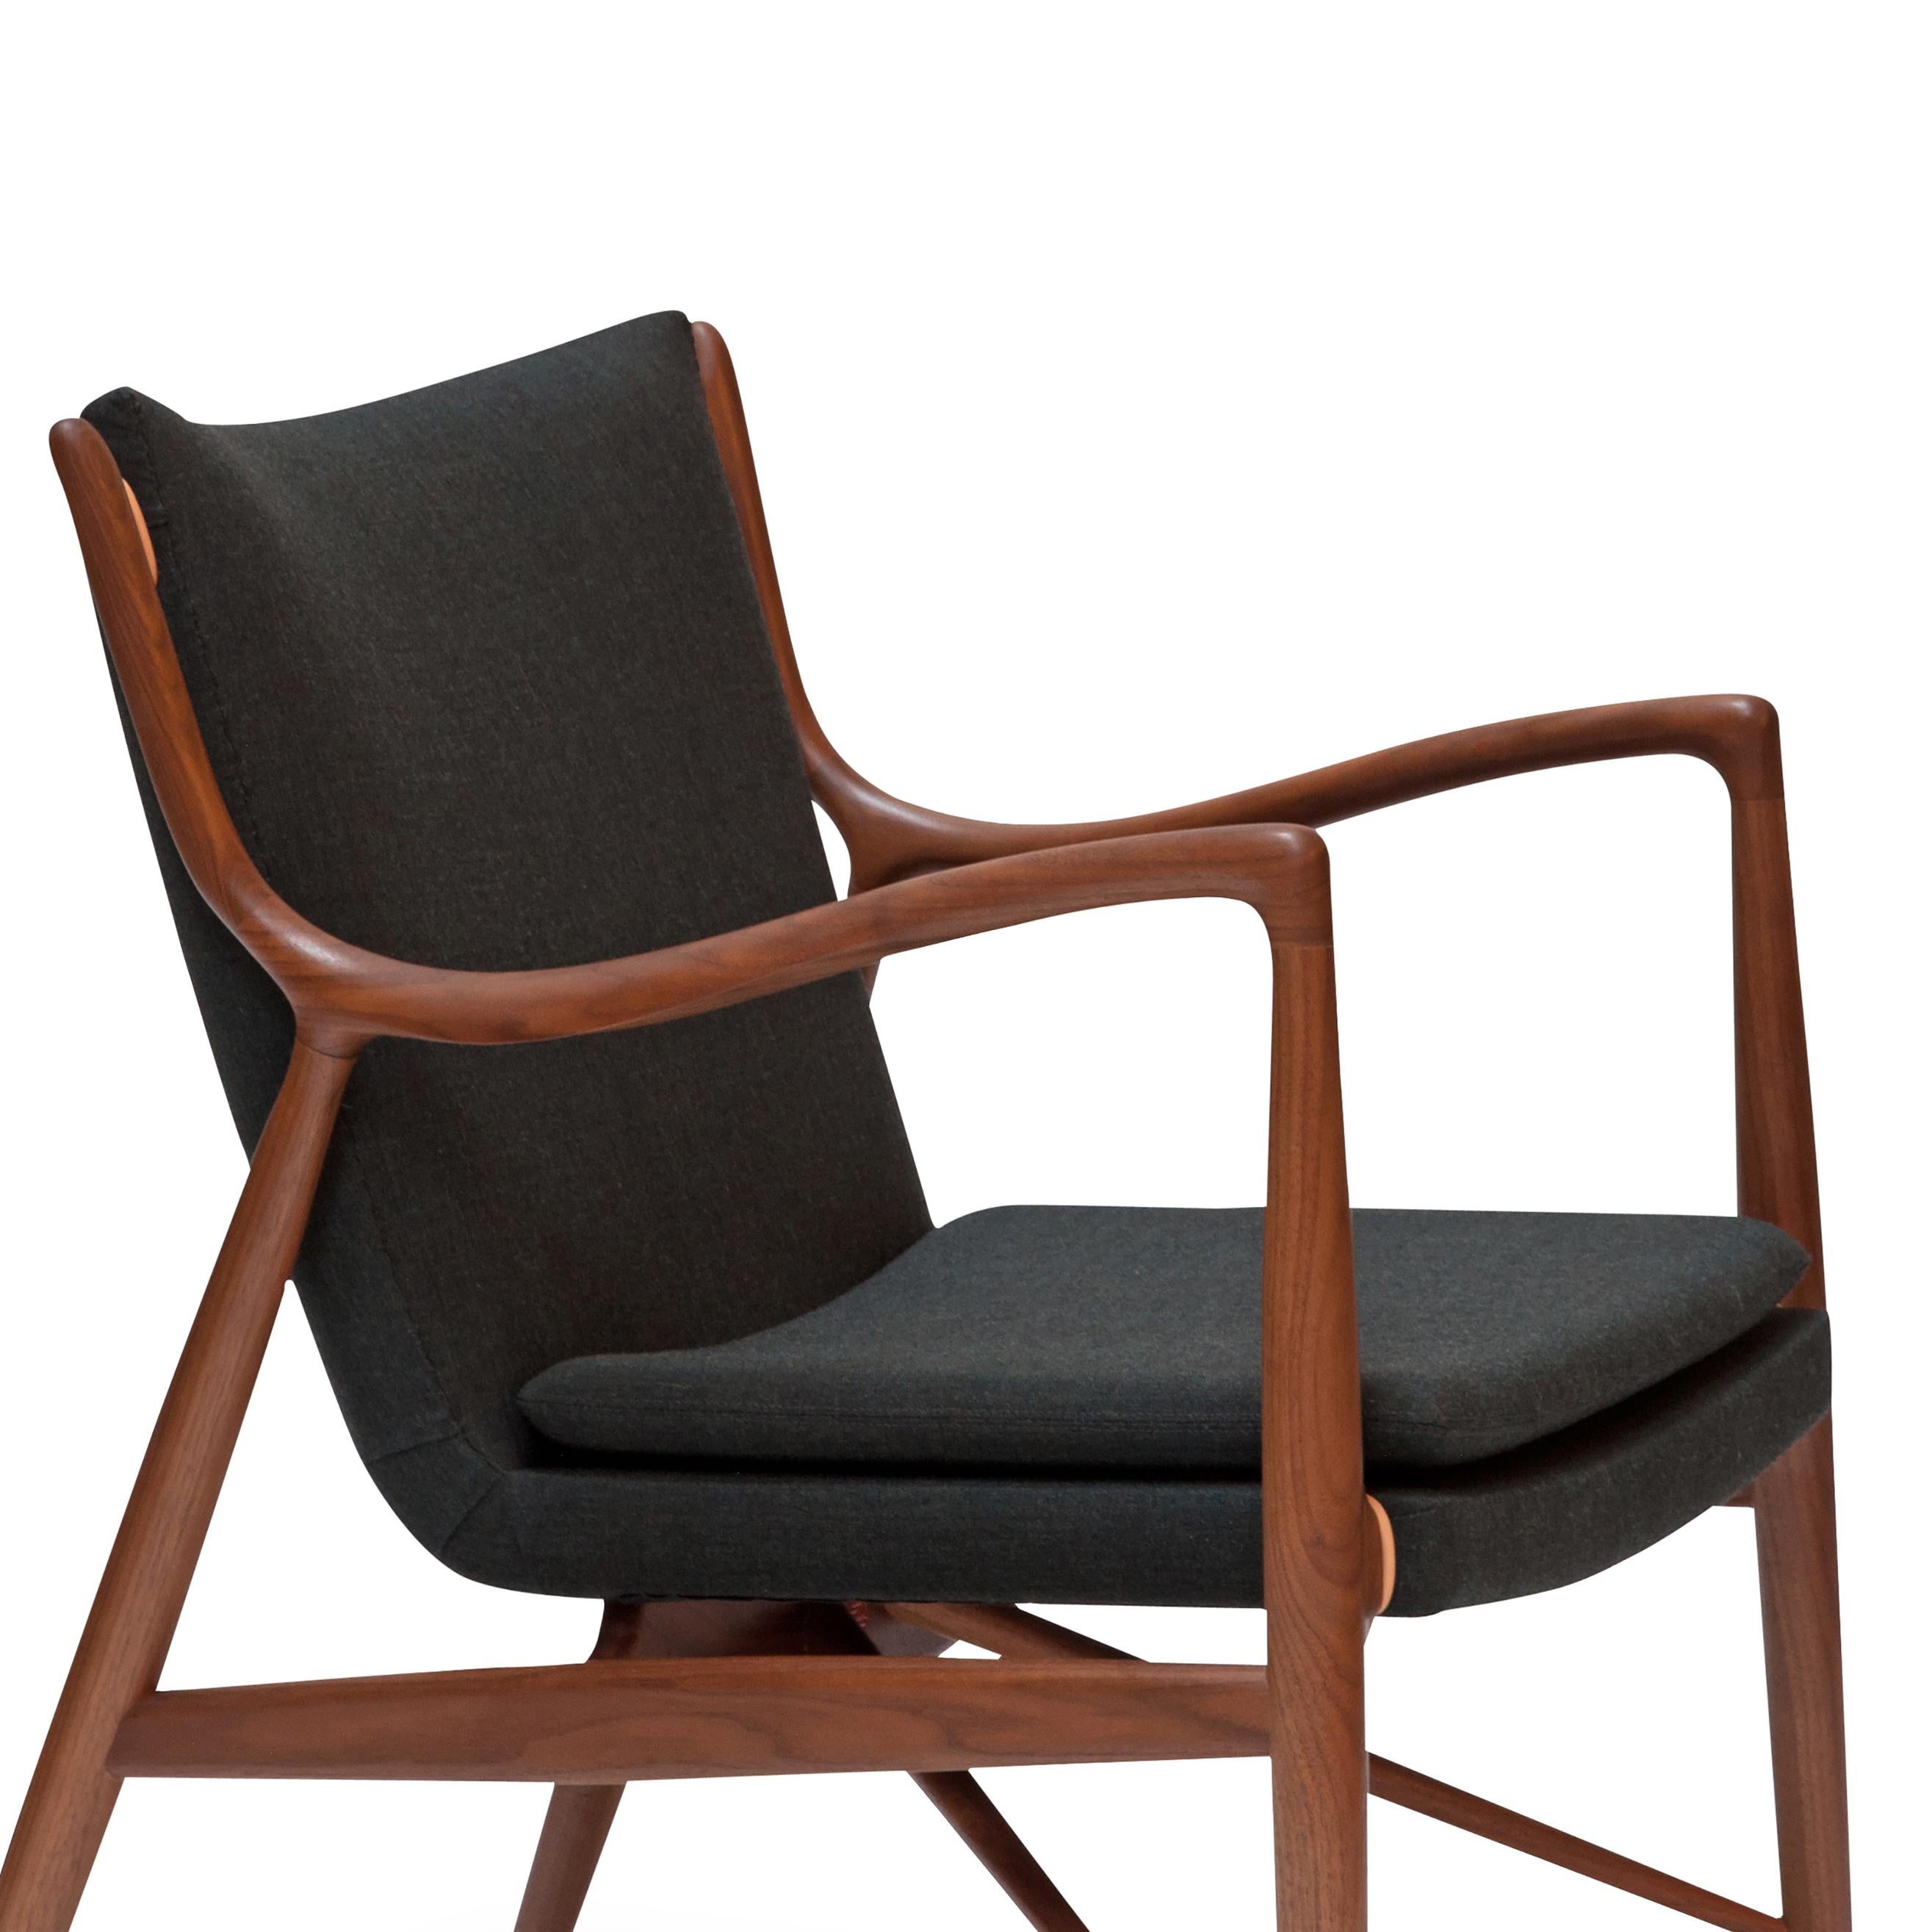 Stuhl, 1945 von Finn Juhl entworfen, 2003 neu aufgelegt.
Hergestellt von House of Finn Juhls in Dänemark.

Im Herbst 1945 stellte Finn Juhls den Stuhl 45 auf der jährlichen Ausstellung der Cabinetmakers' Guild vor. Heute gilt der Stuhl weithin als